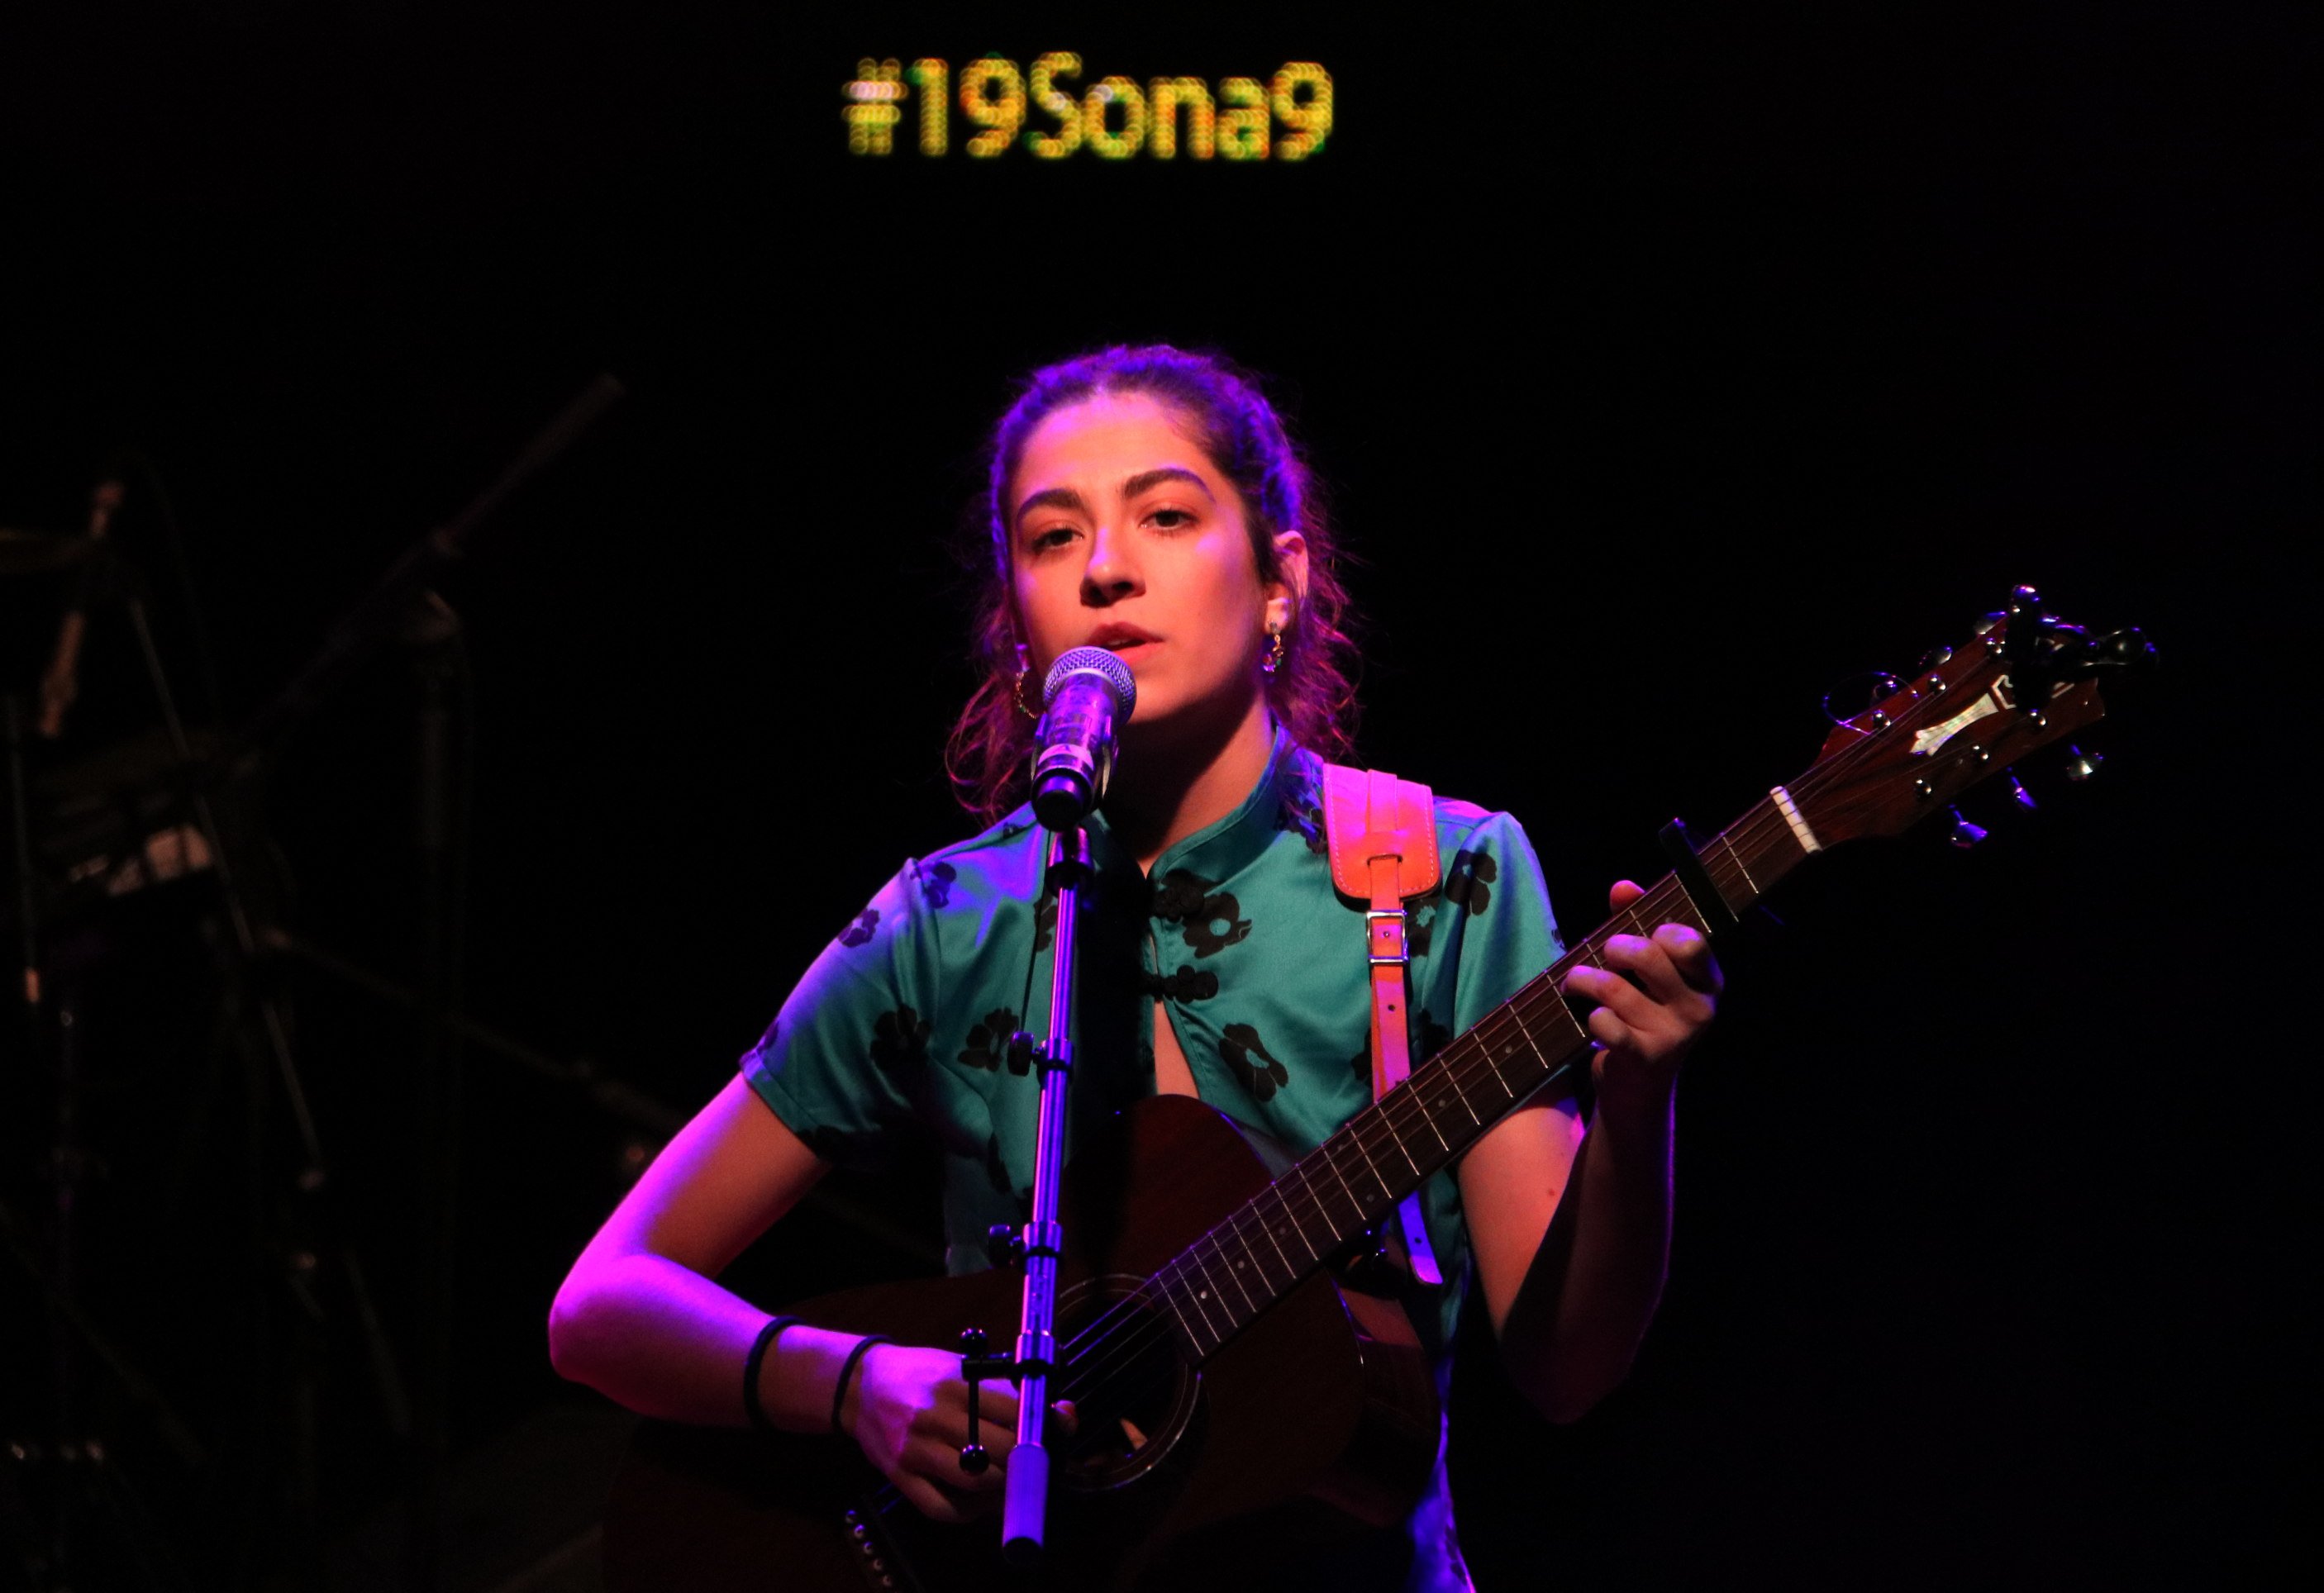 Maria Jaume Martorell gana el concurso Sona 9 2019